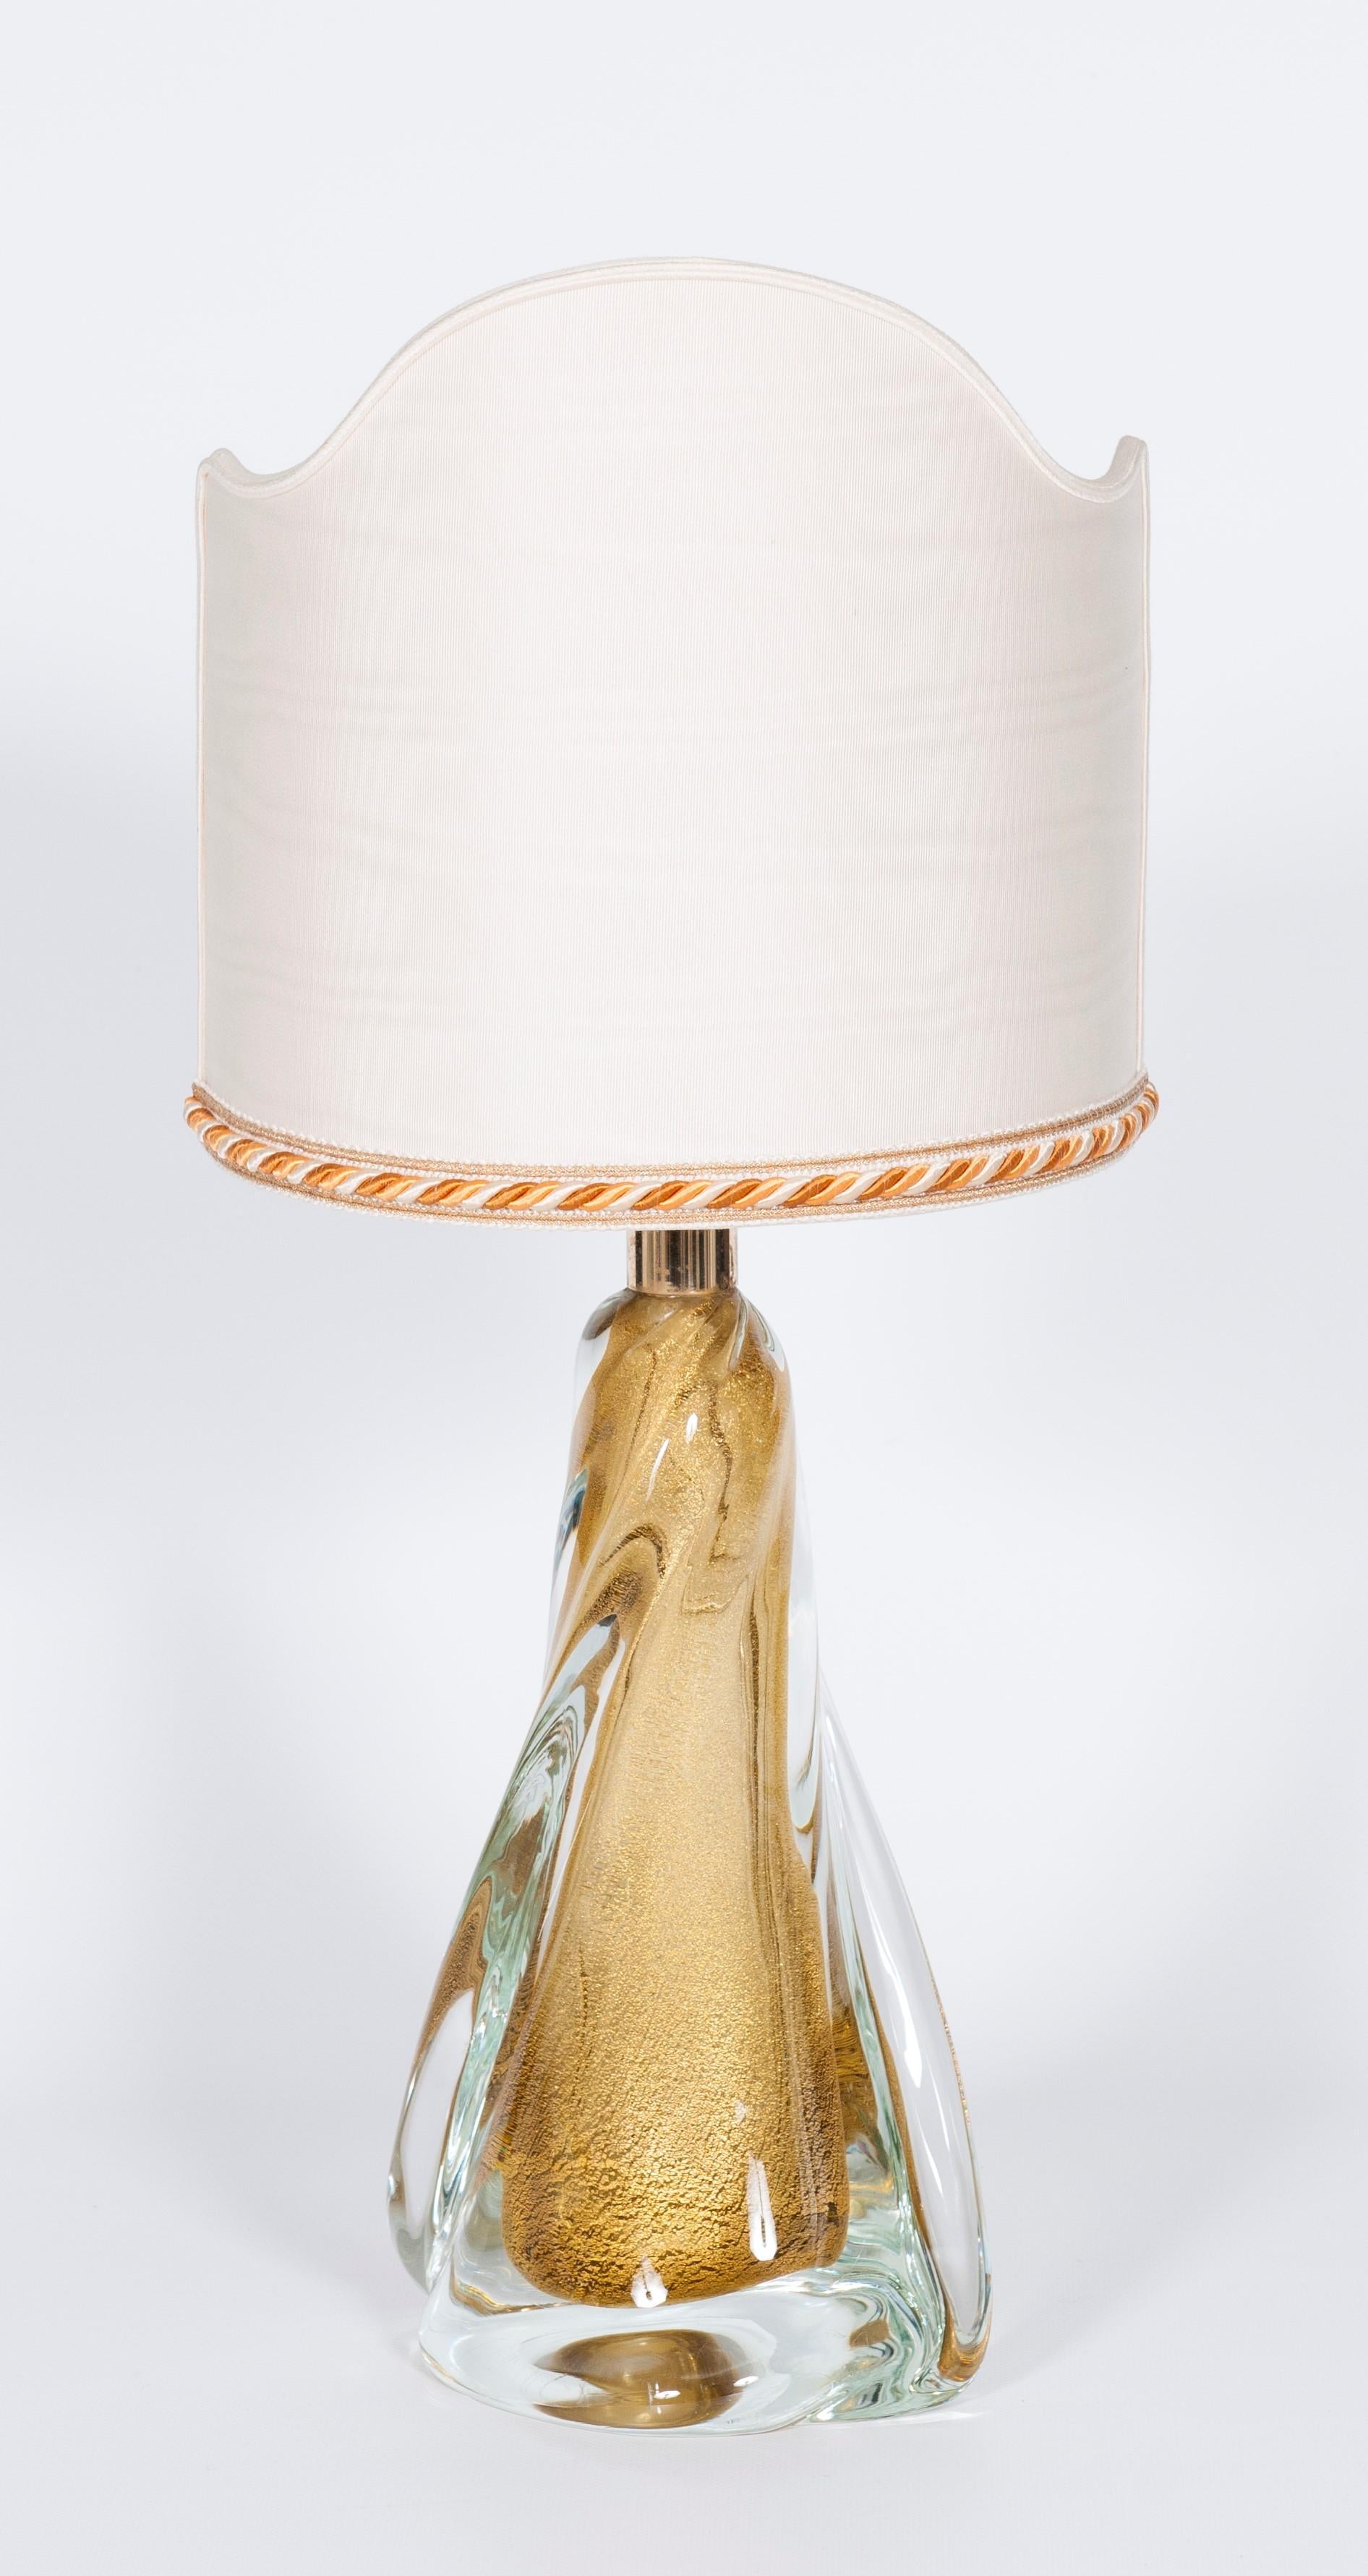 Lampe de bureau massive en verre de Murano artistique avec corps en forme d'éventail en or, années 1980
Lampe de table, entièrement réalisée à la main sur l'île de Murano, à Venise, en verre artistique soufflé de Murano, attribuée à Seguso.
La base